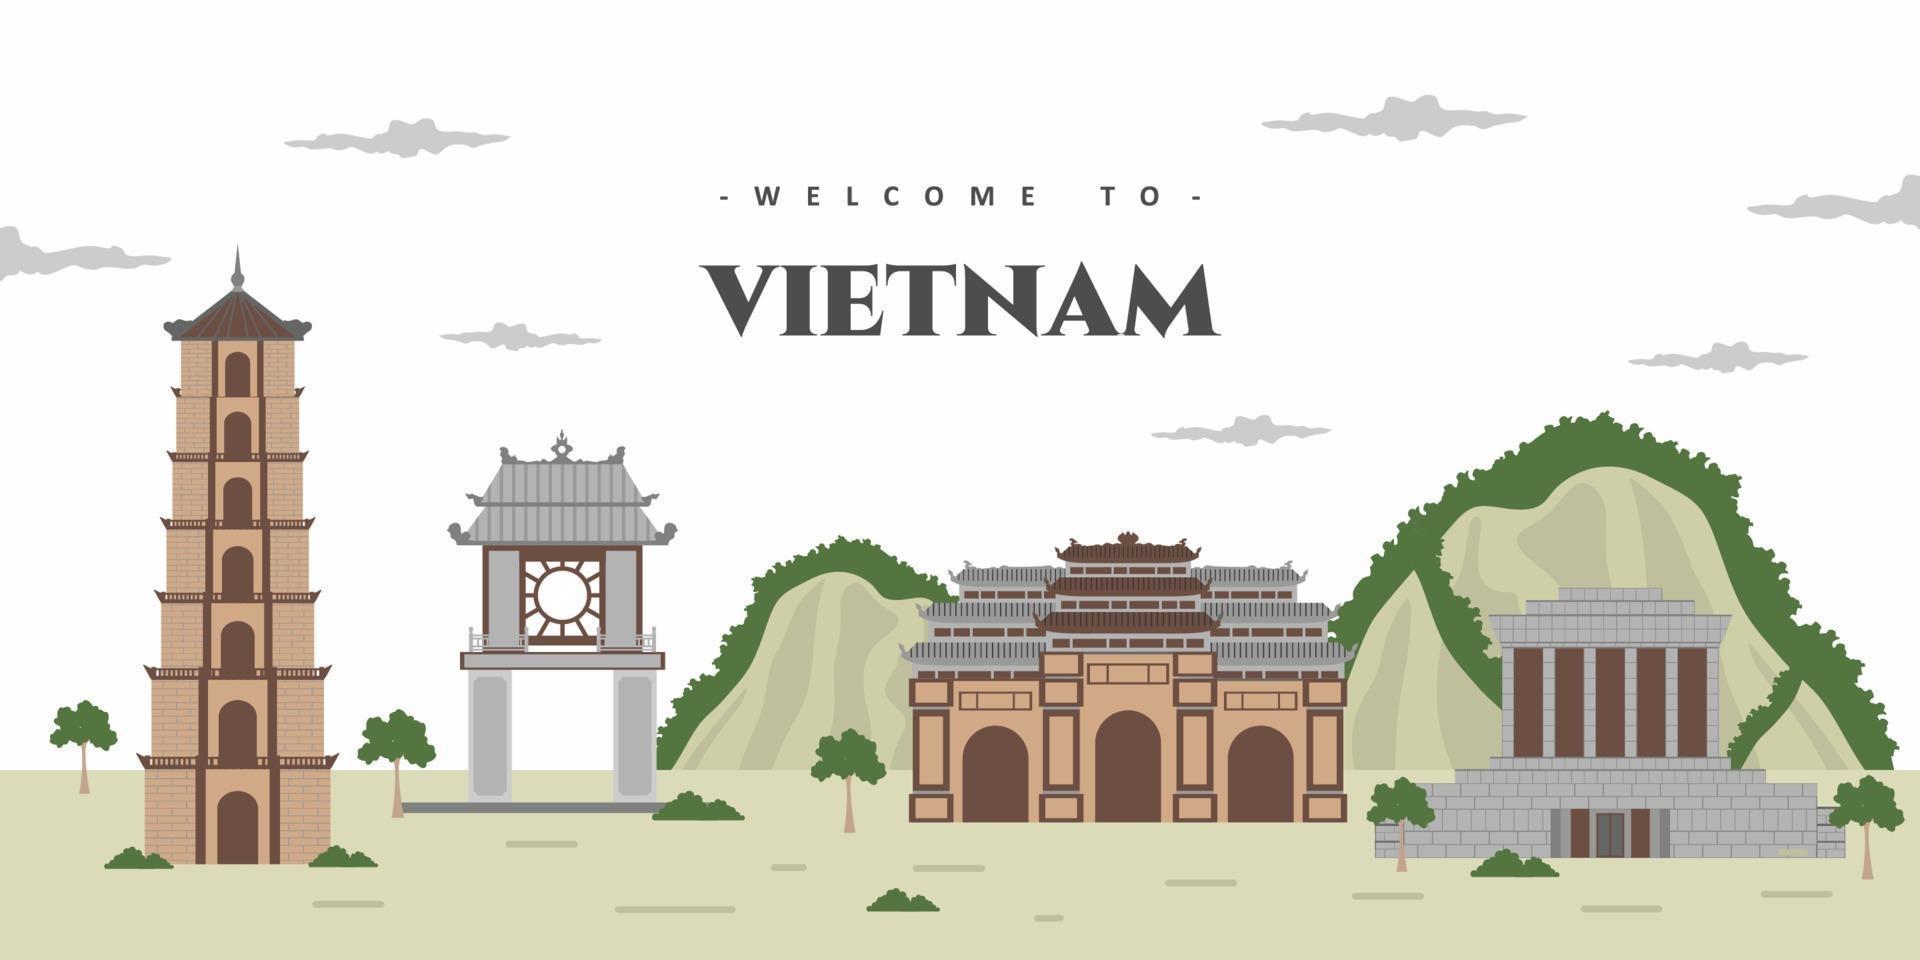 paisagem da cidade do Vietnã com marco histórico do edifício mundialmente famoso. marcos, quadro, viagens e atração turística do Vietnã. cidades do mundo férias viagens turismo coleção ásia. vetor